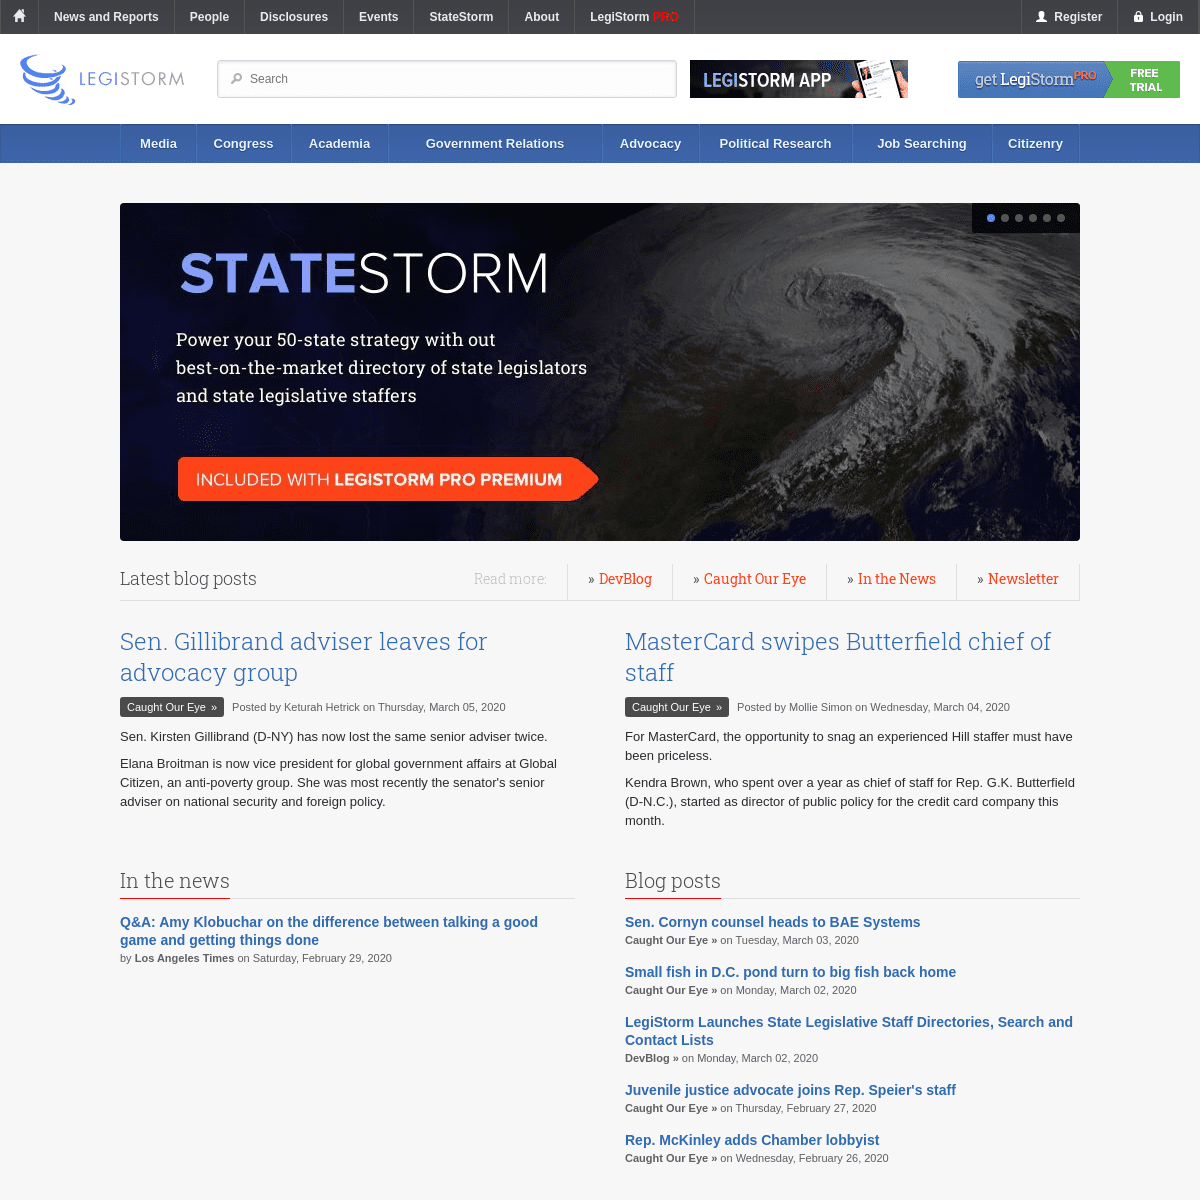 A complete backup of legistorm.com